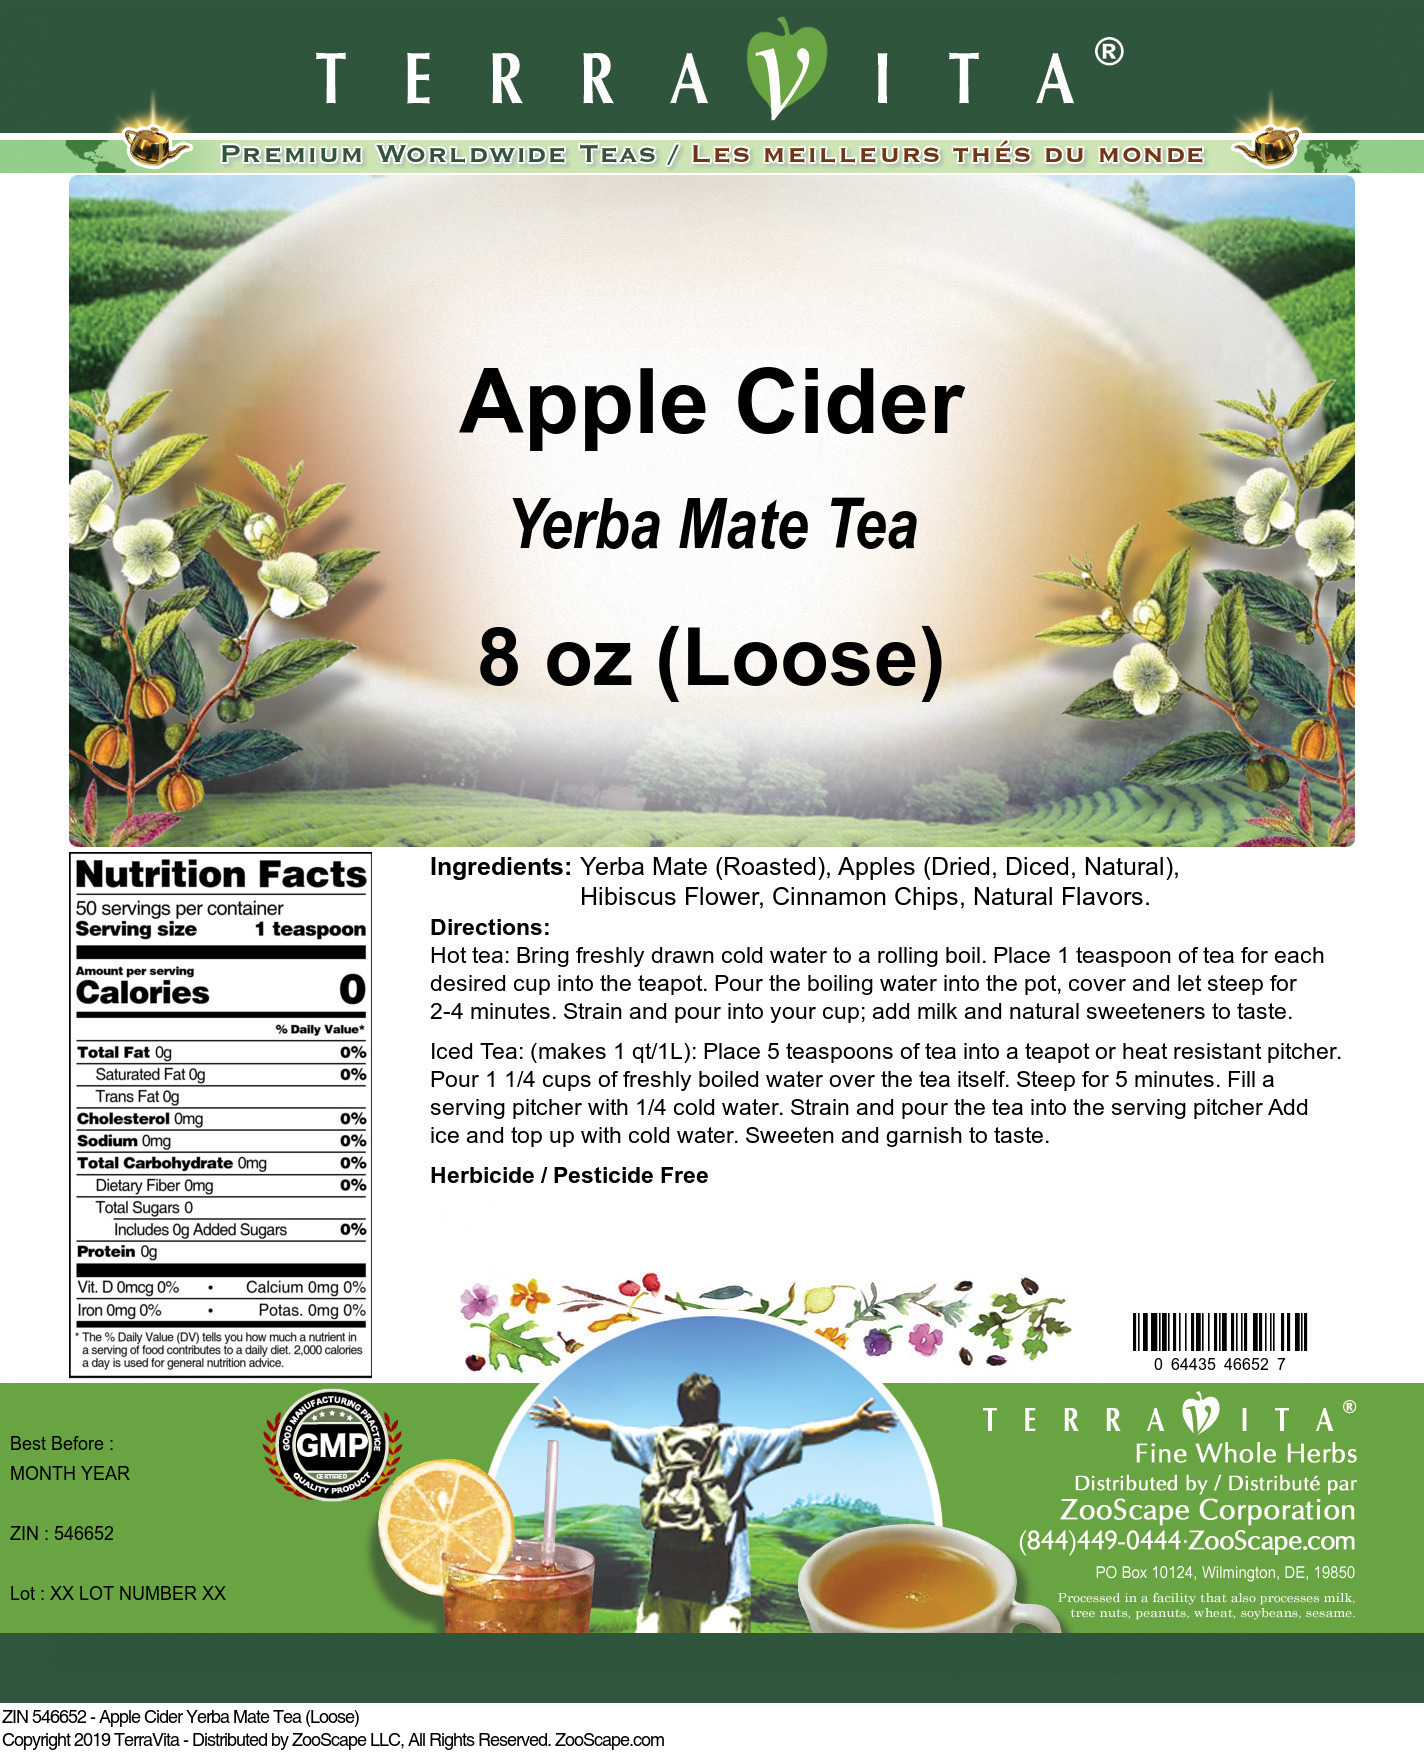 Apple Cider Yerba Mate Tea (Loose) - Label